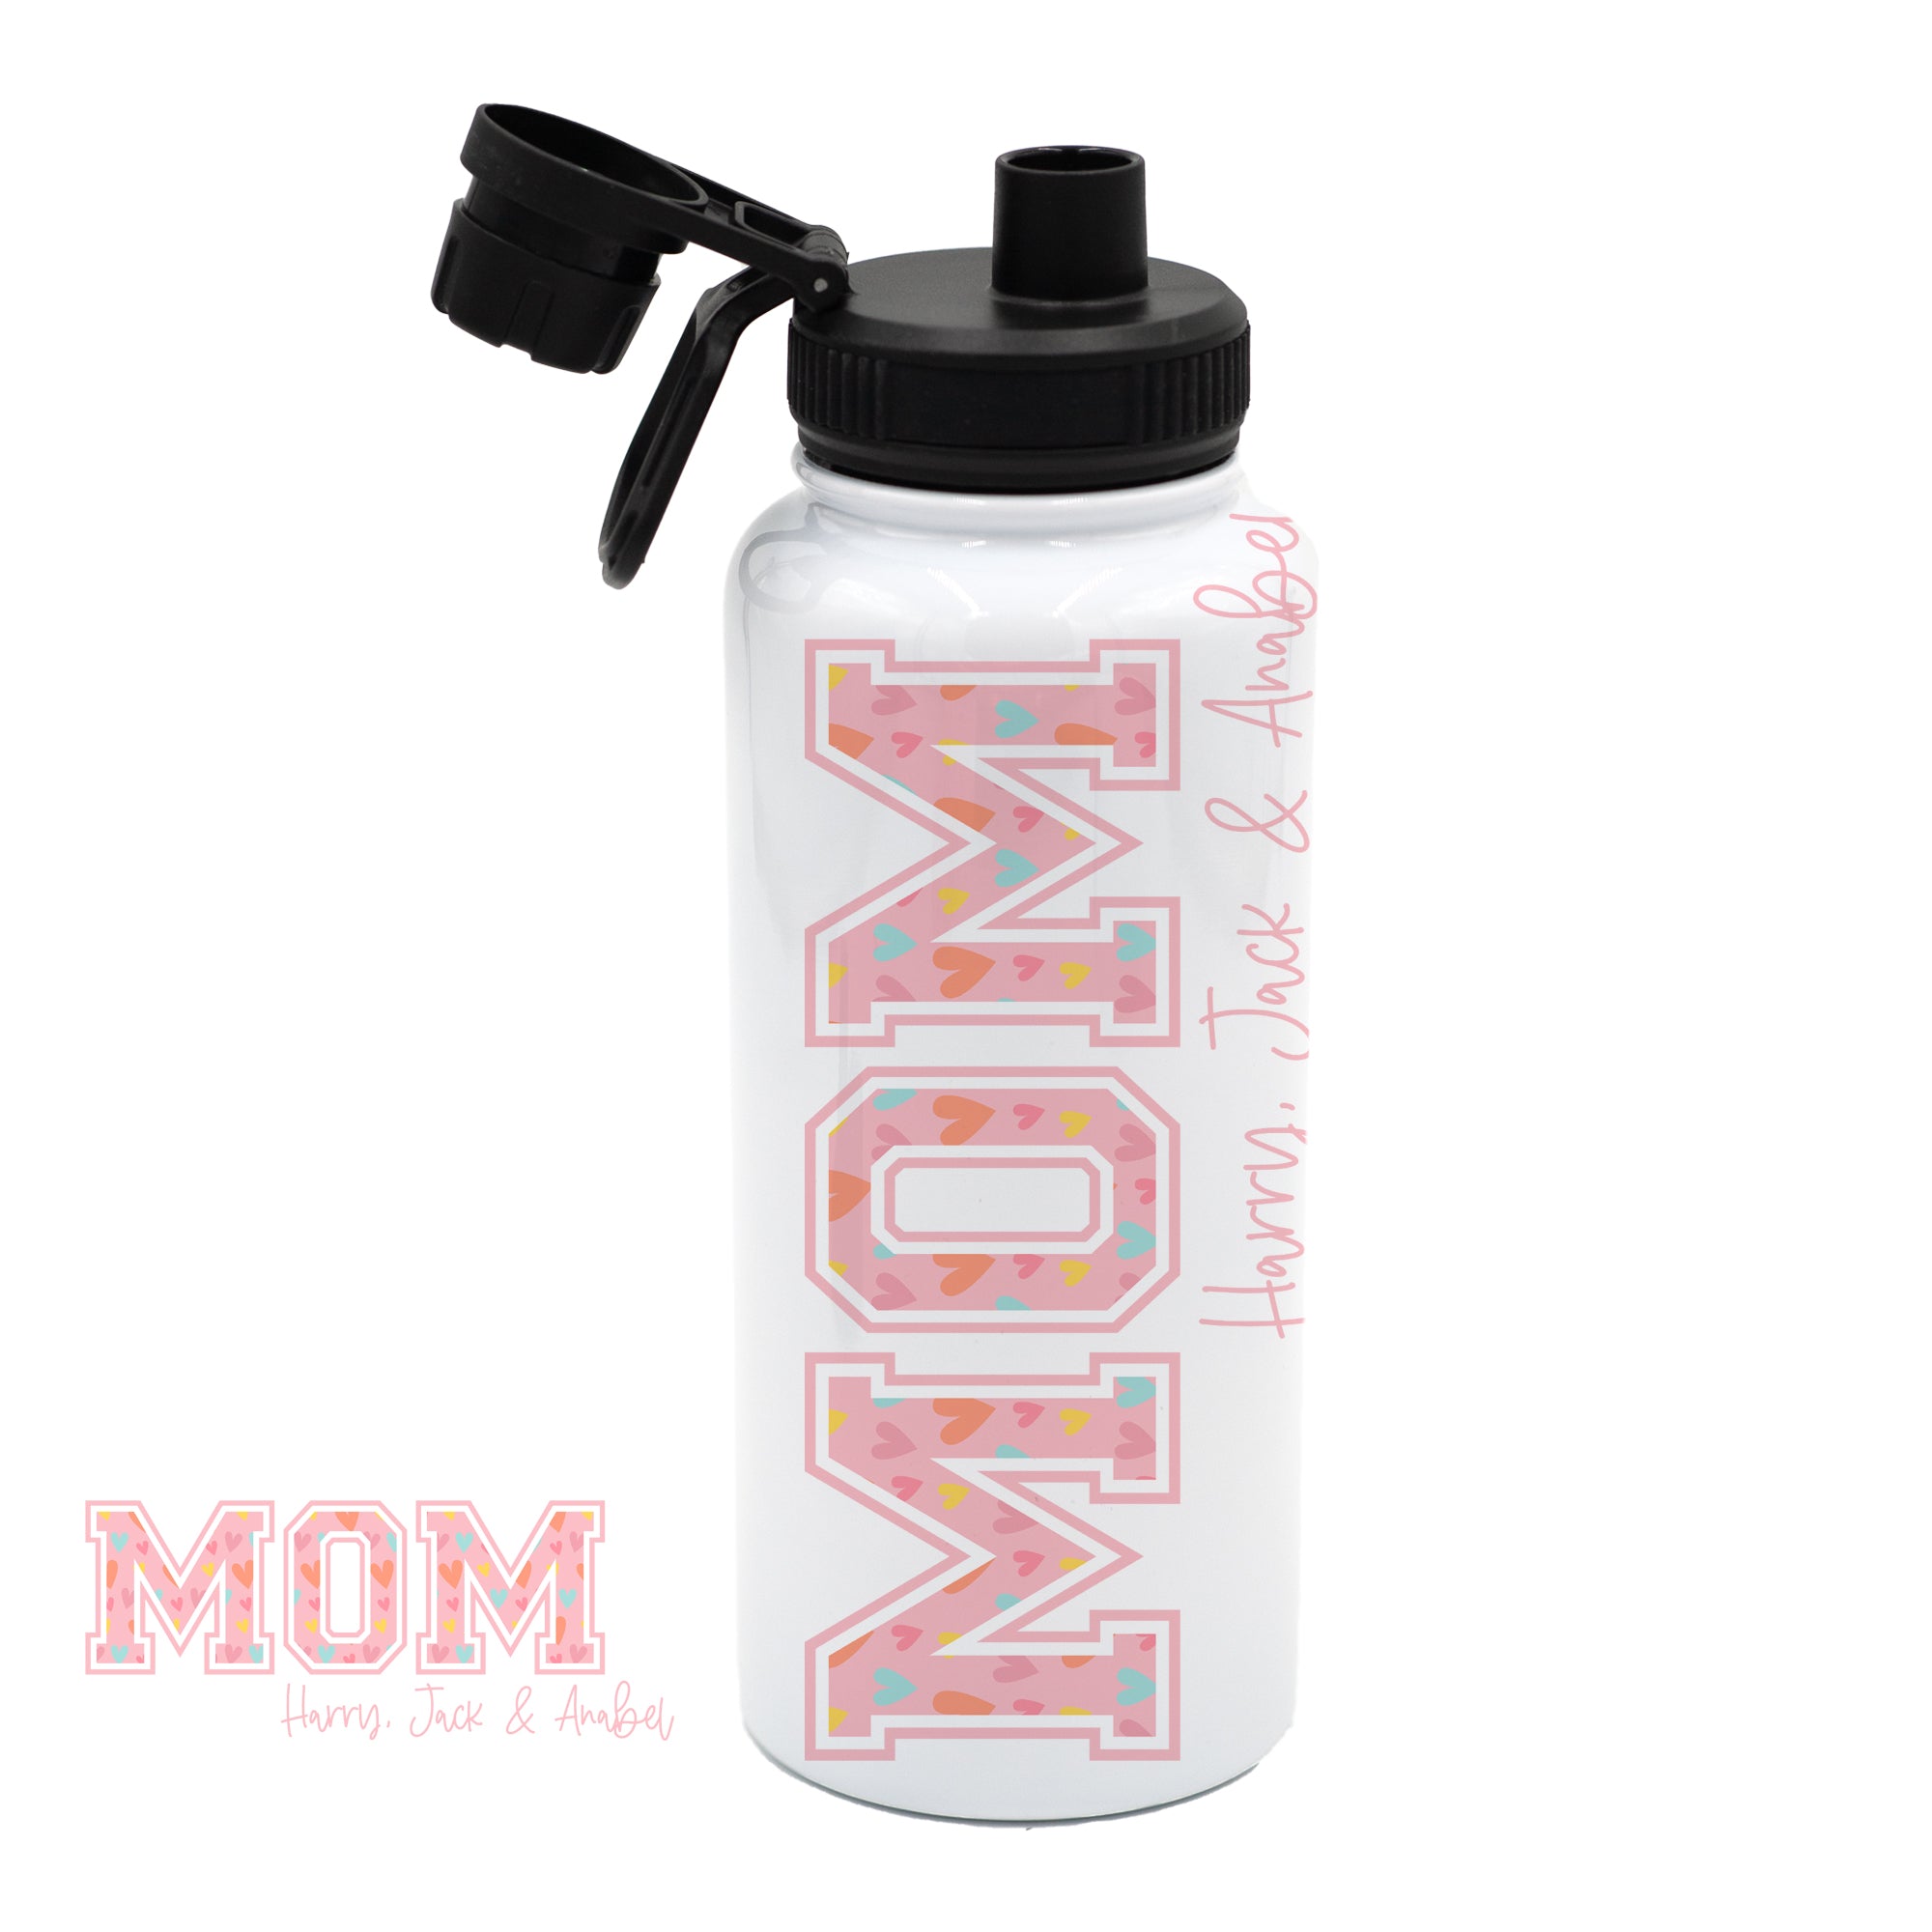 MOM - Personalized Bottle/Tumbler/Mug